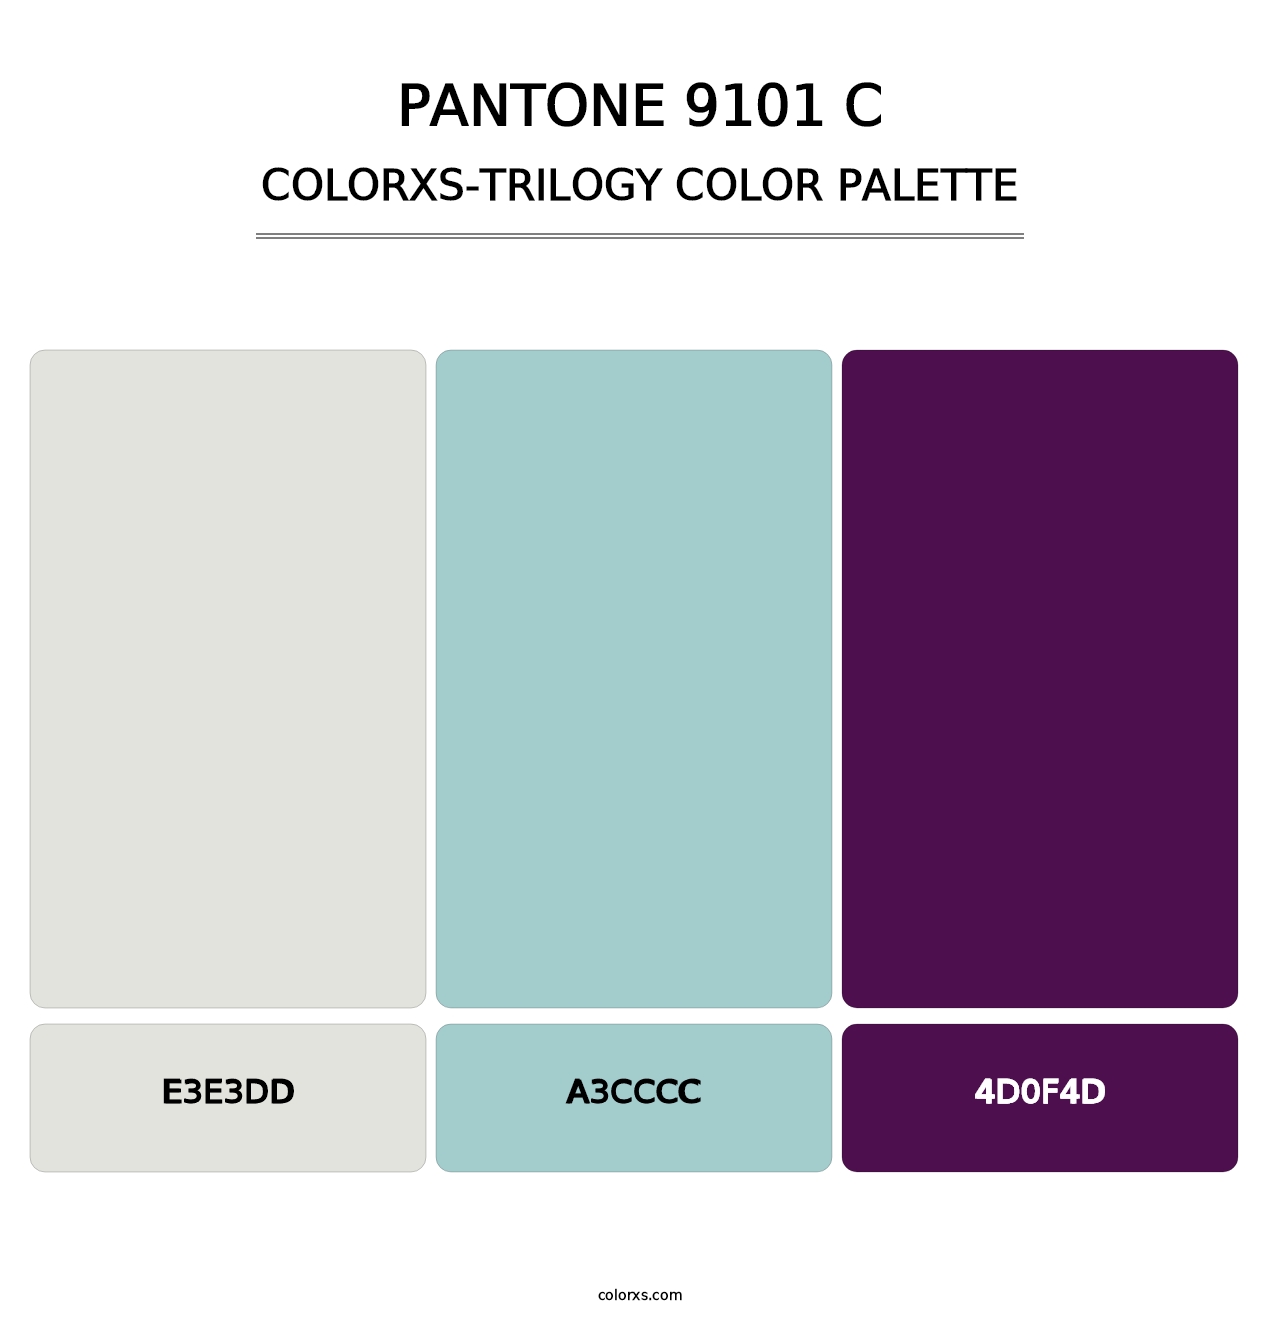 PANTONE 9101 C - Colorxs Trilogy Palette